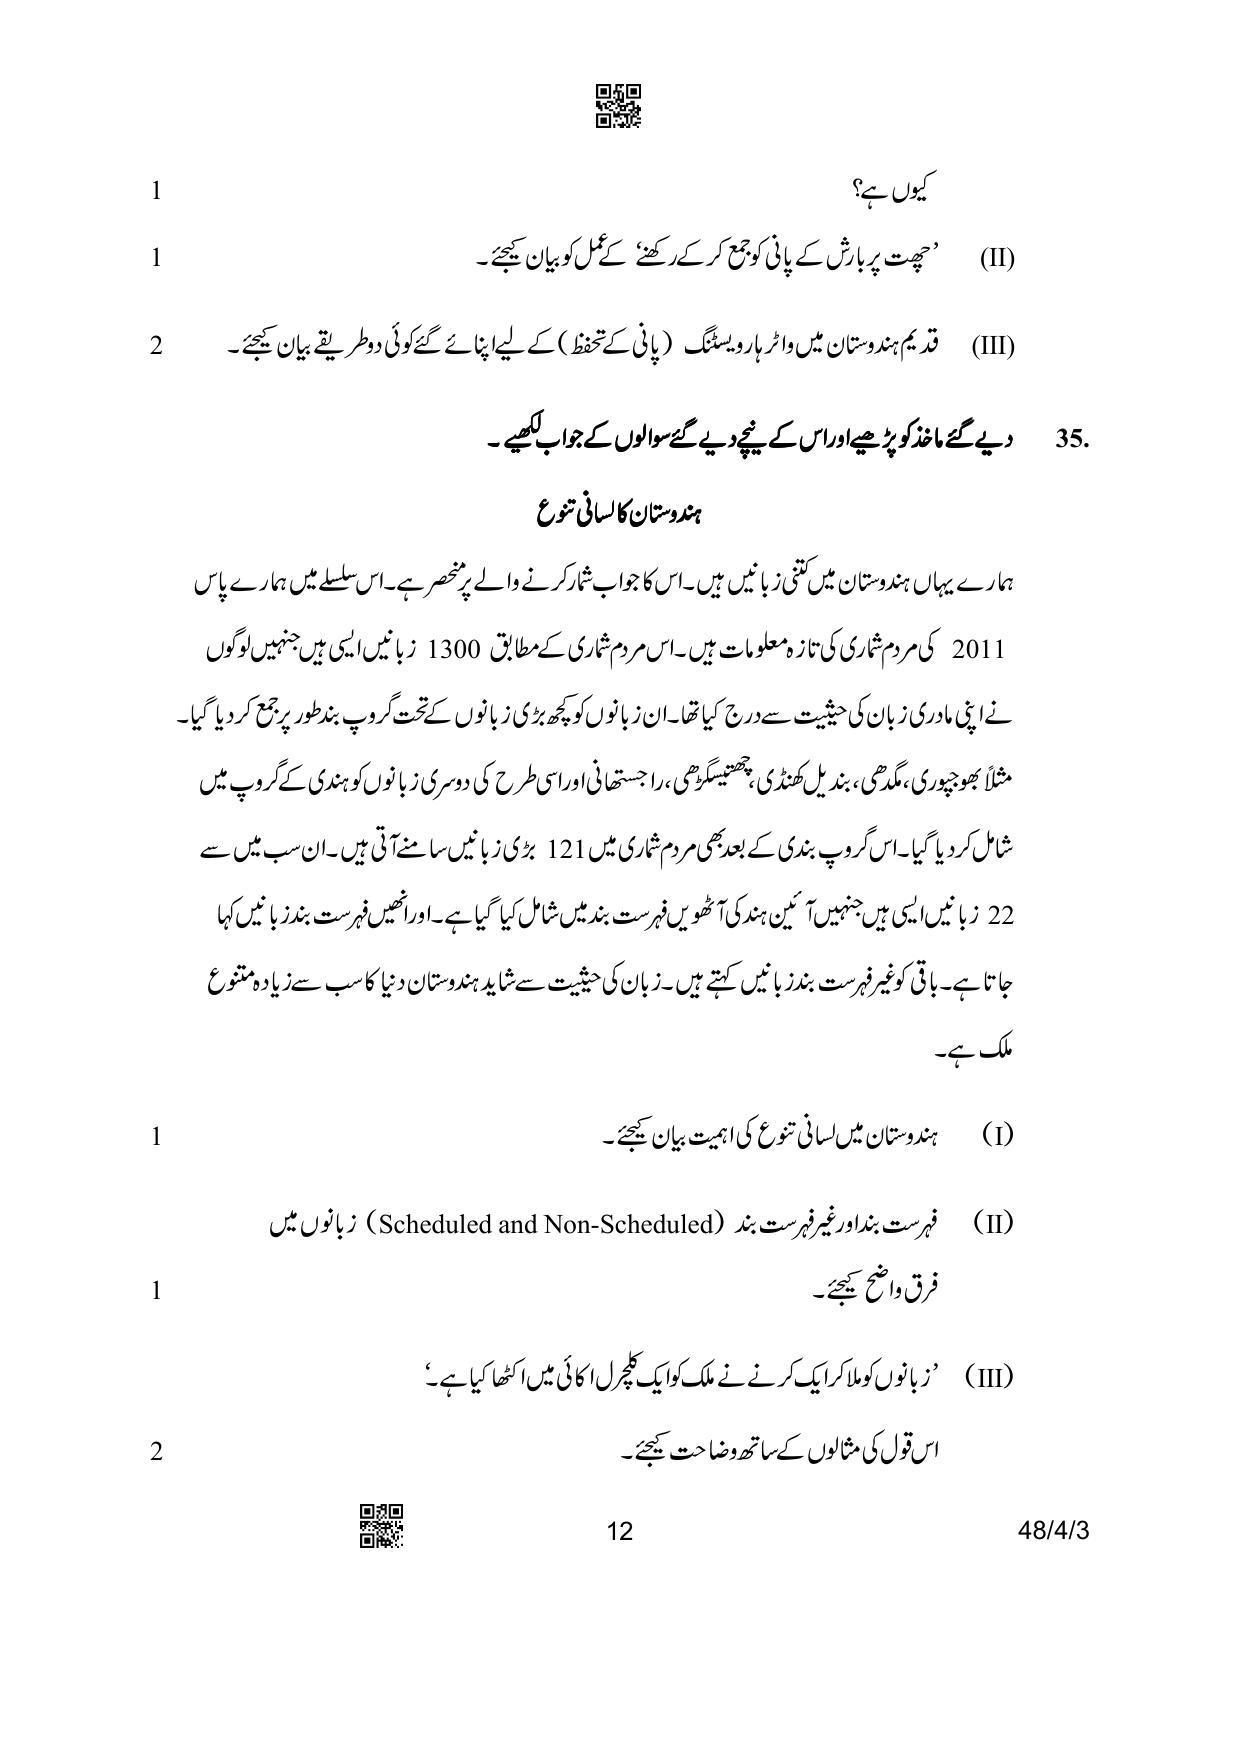 CBSE Class 10 48-4-3 Social Science Urdu Version 2023 Question Paper - Page 12